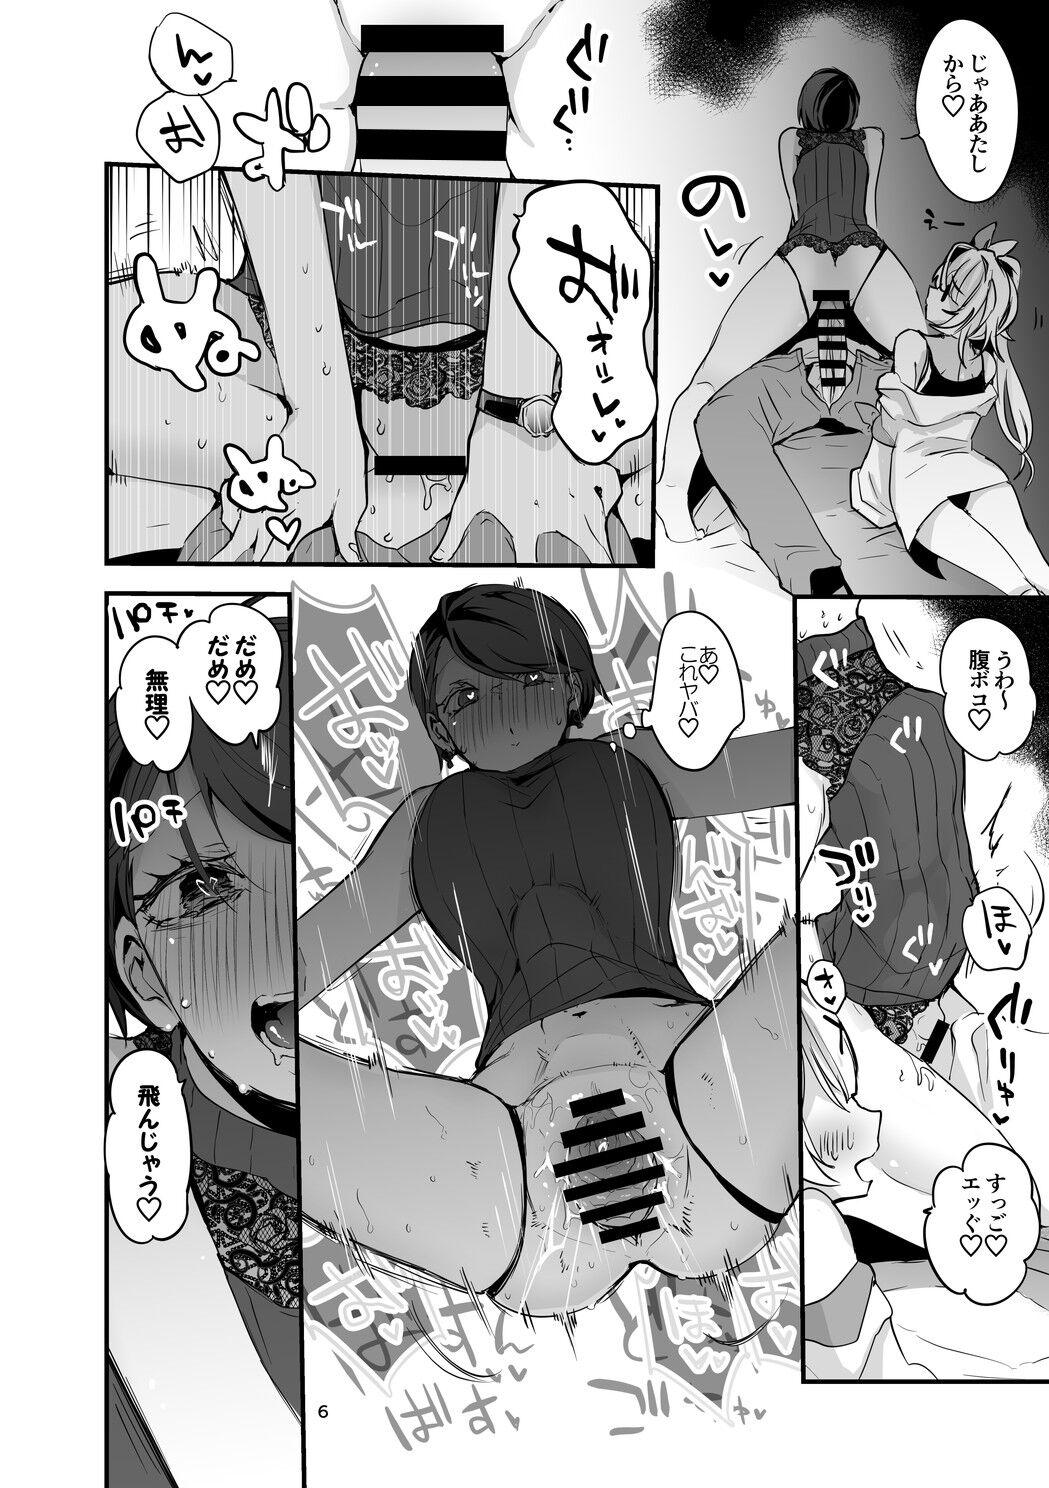 Anime Niji Ero Matomebon 2 - Nijisanji Safadinha - Page 7